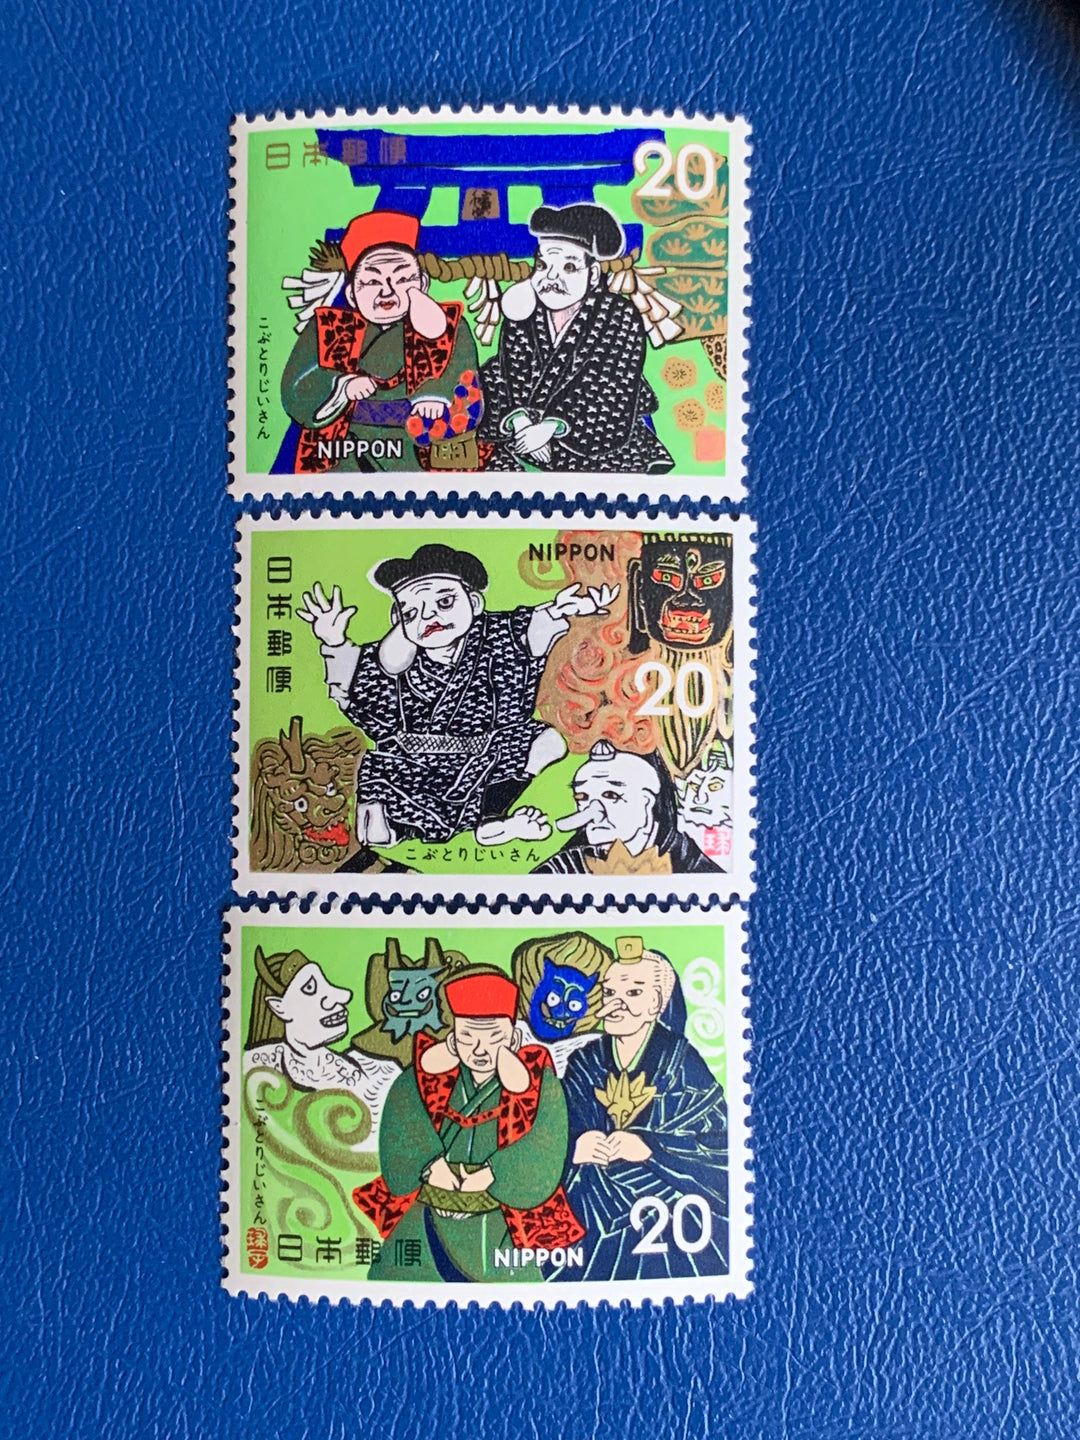 Japan - Original Vintage Postage Stamps- 1974 Folklore